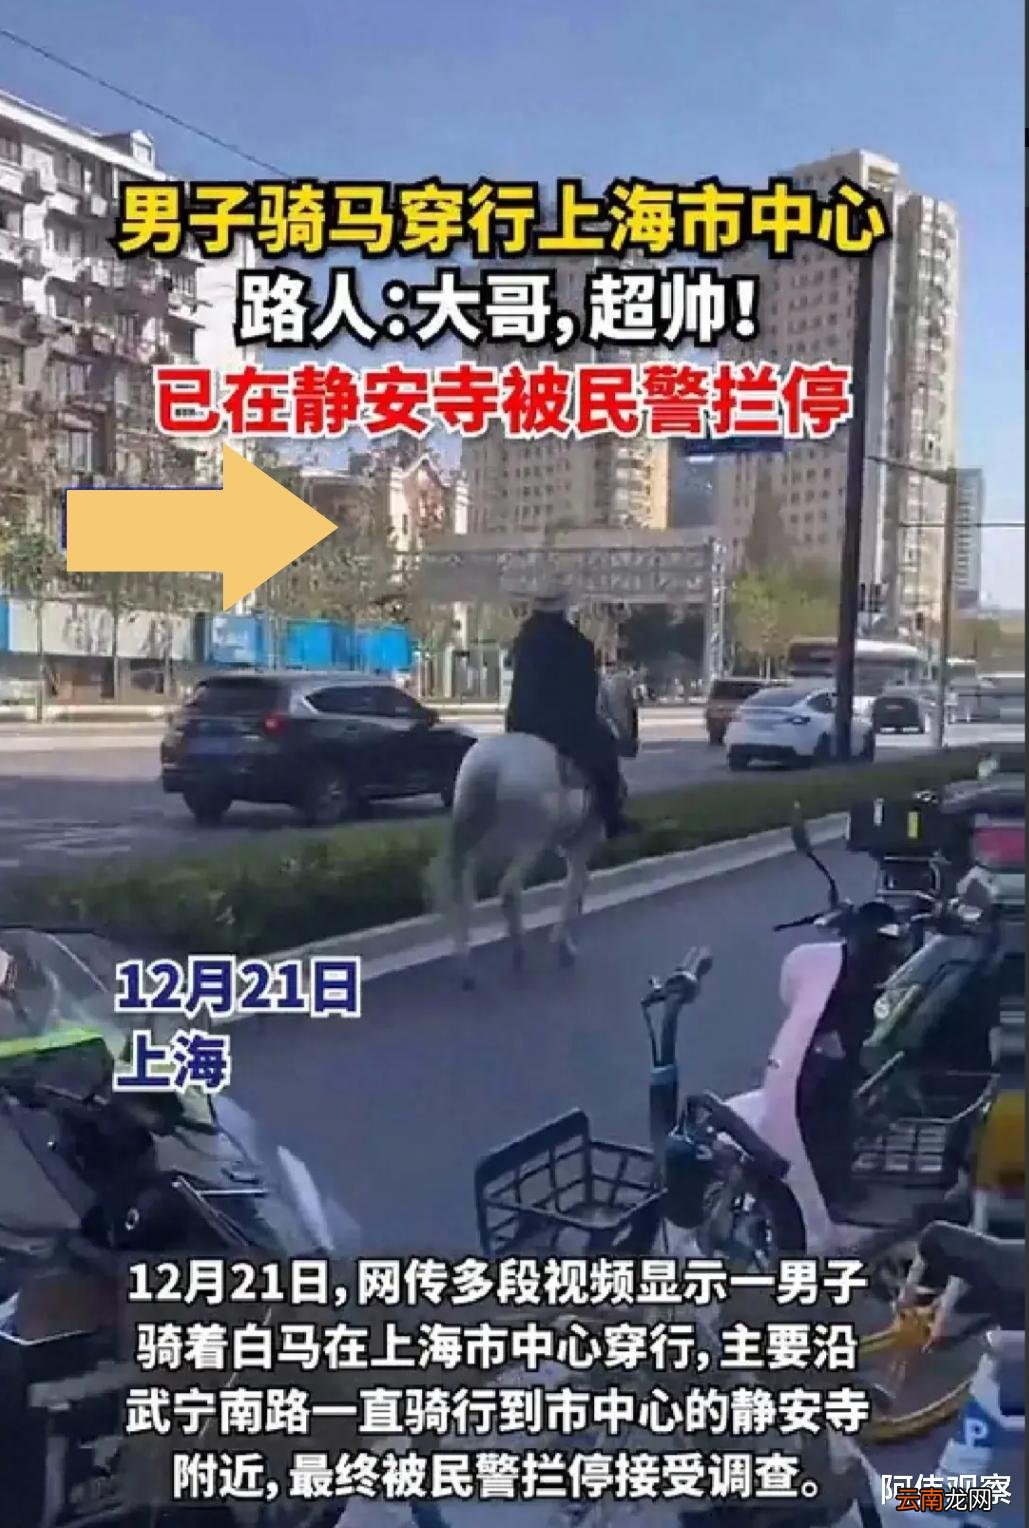 上海闹市现“鲜衣怒马”引发公众关注和争议